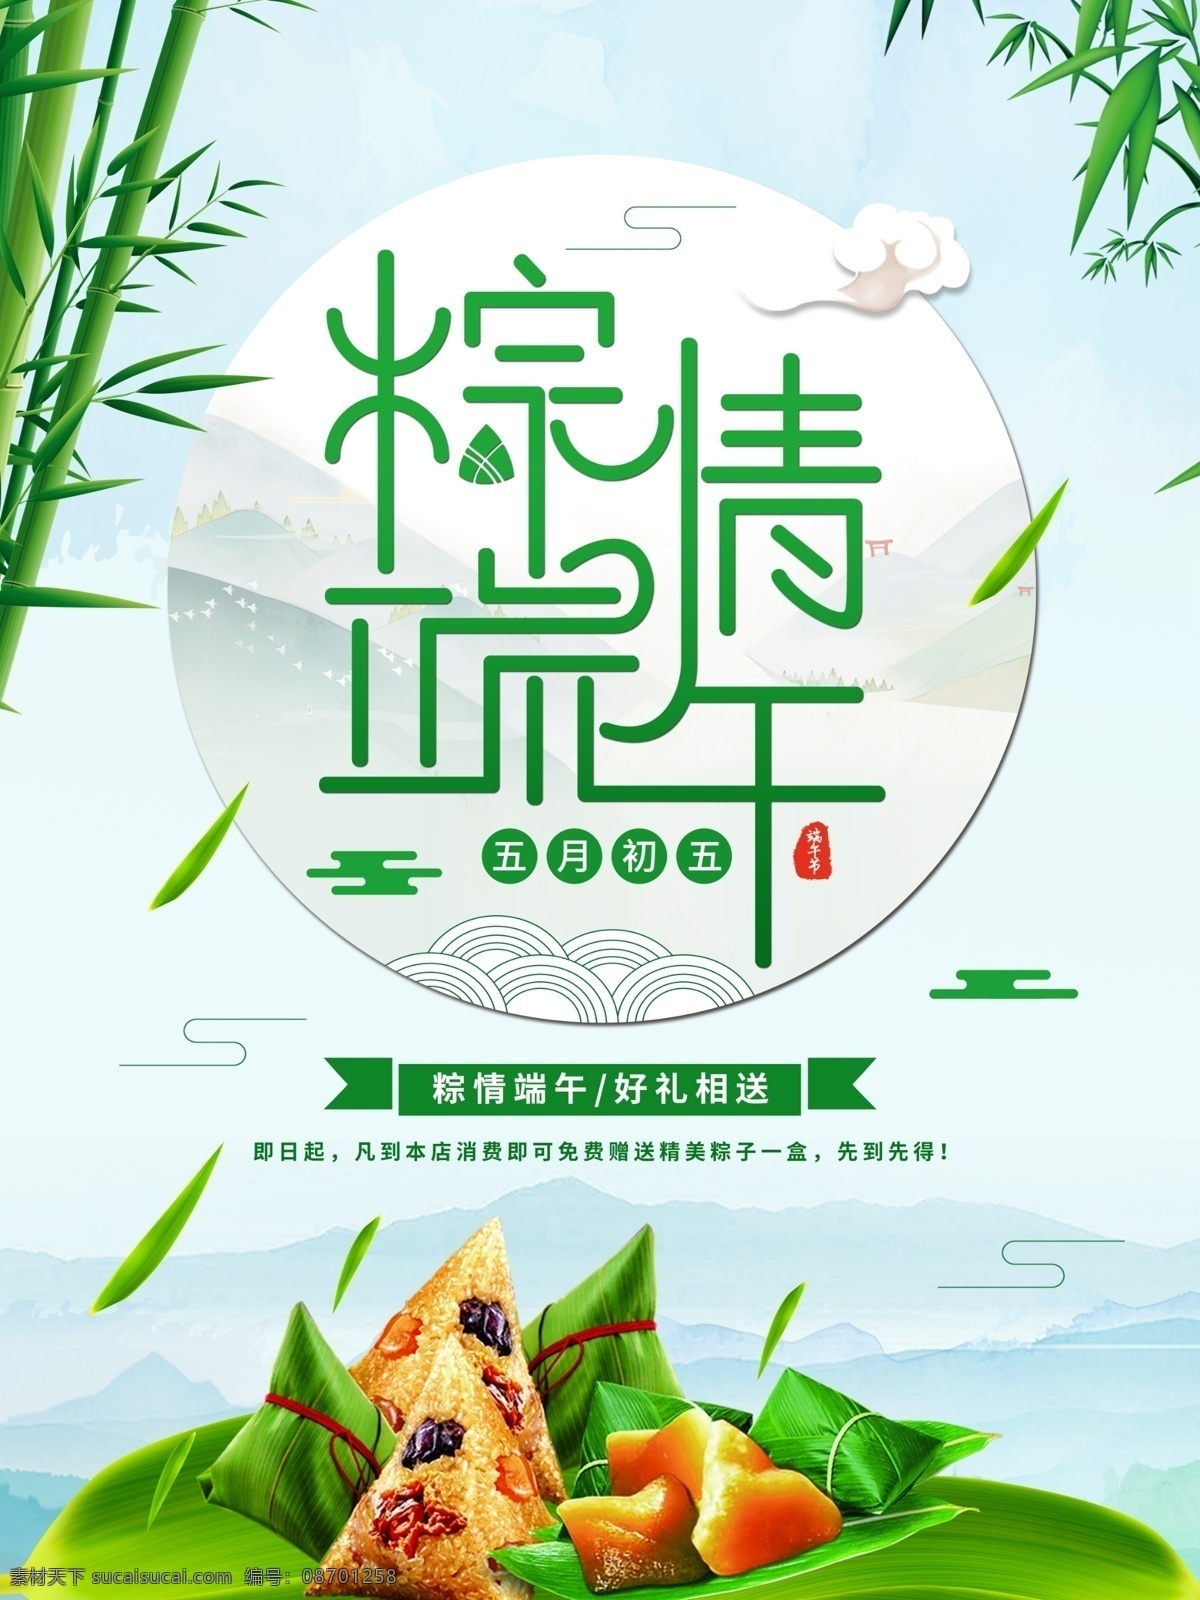 创意 字体 端午节 促销 海报 粽子 创意字体设计 竹子 端阳节 龙舟节 赛龙舟 传统节日